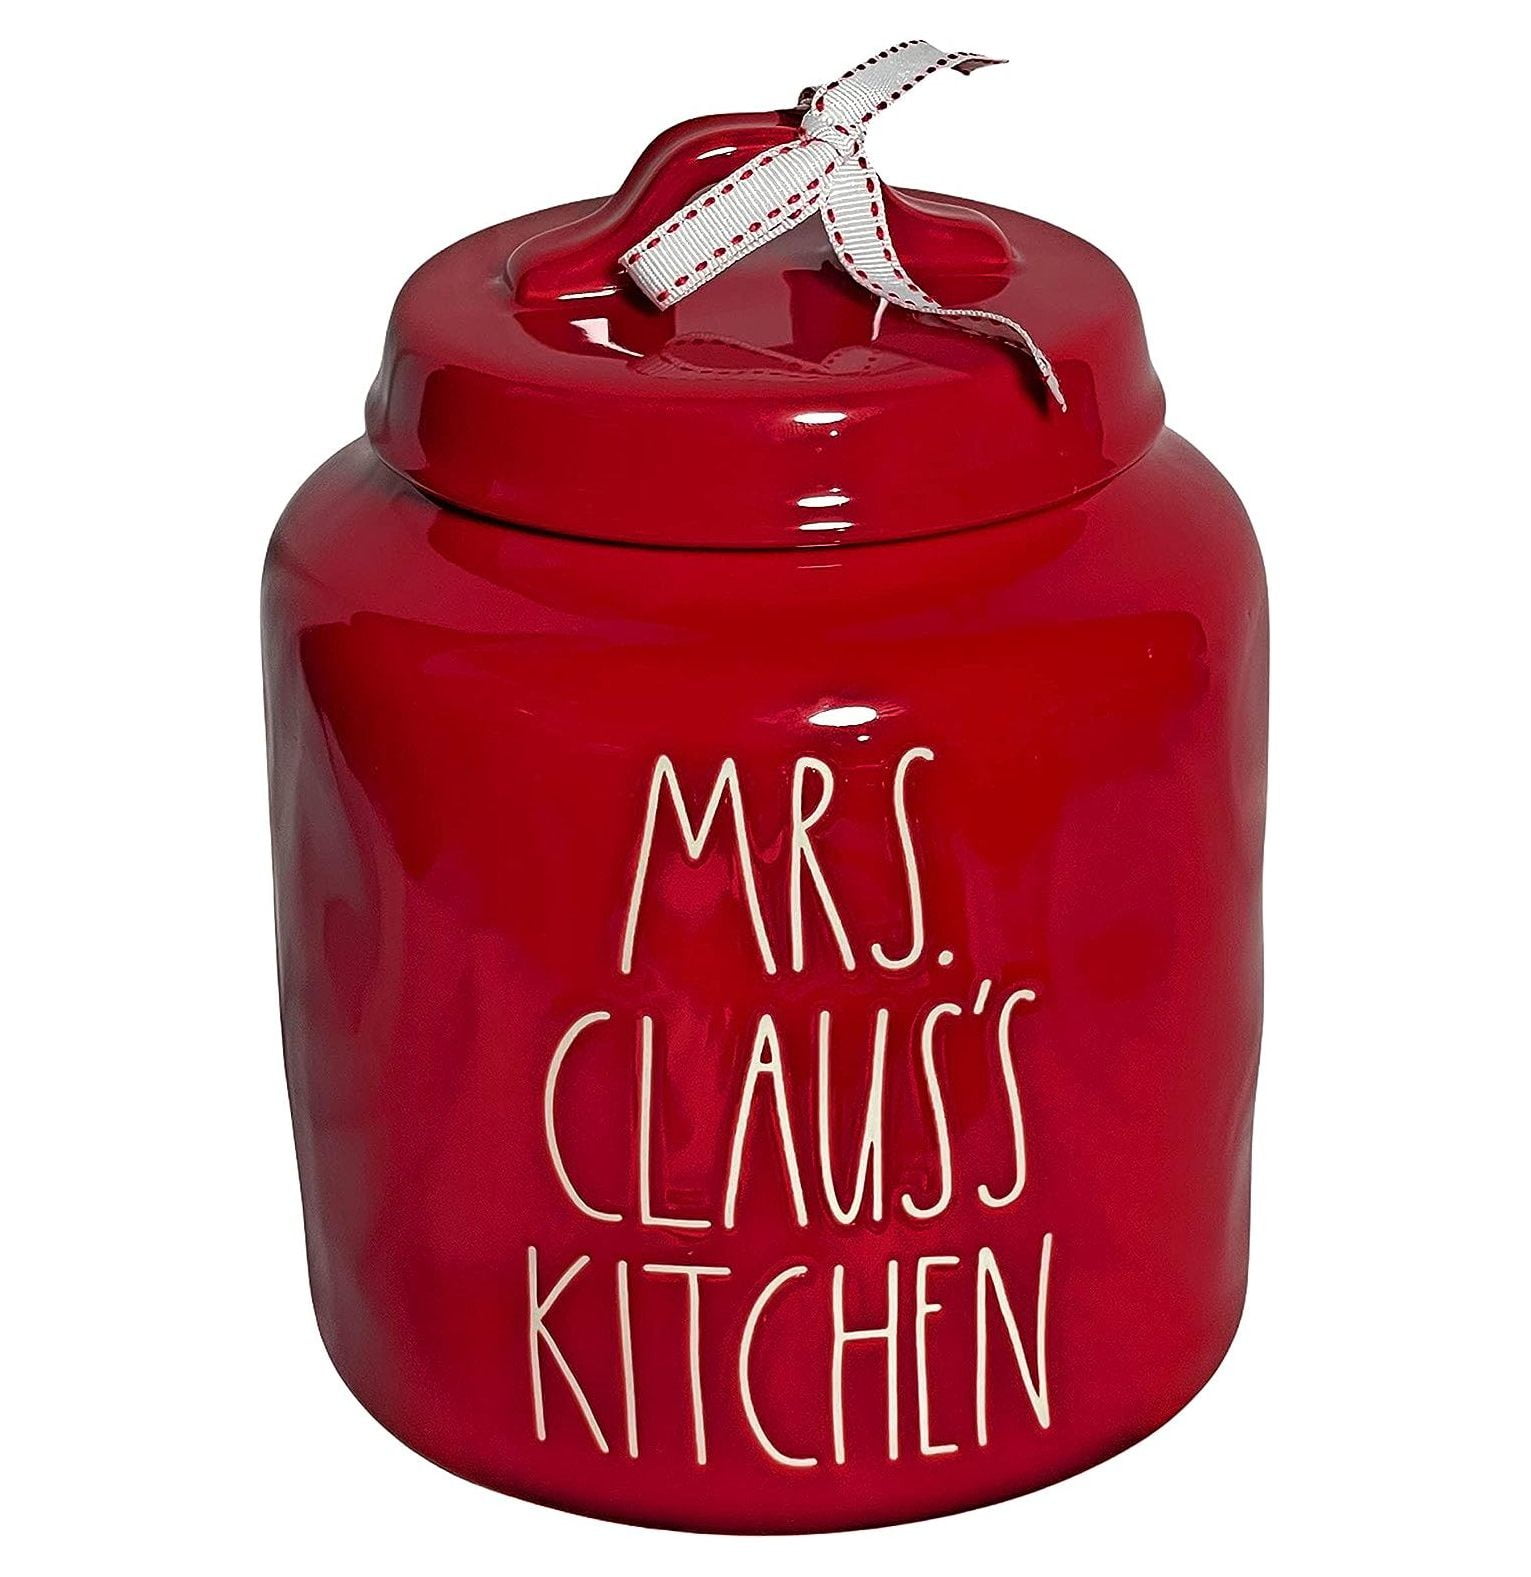 Rae Dunn Xoxo Red Ceramic Mini Casserole Dish/ Pot Kitchen Collectio -  PipPosh